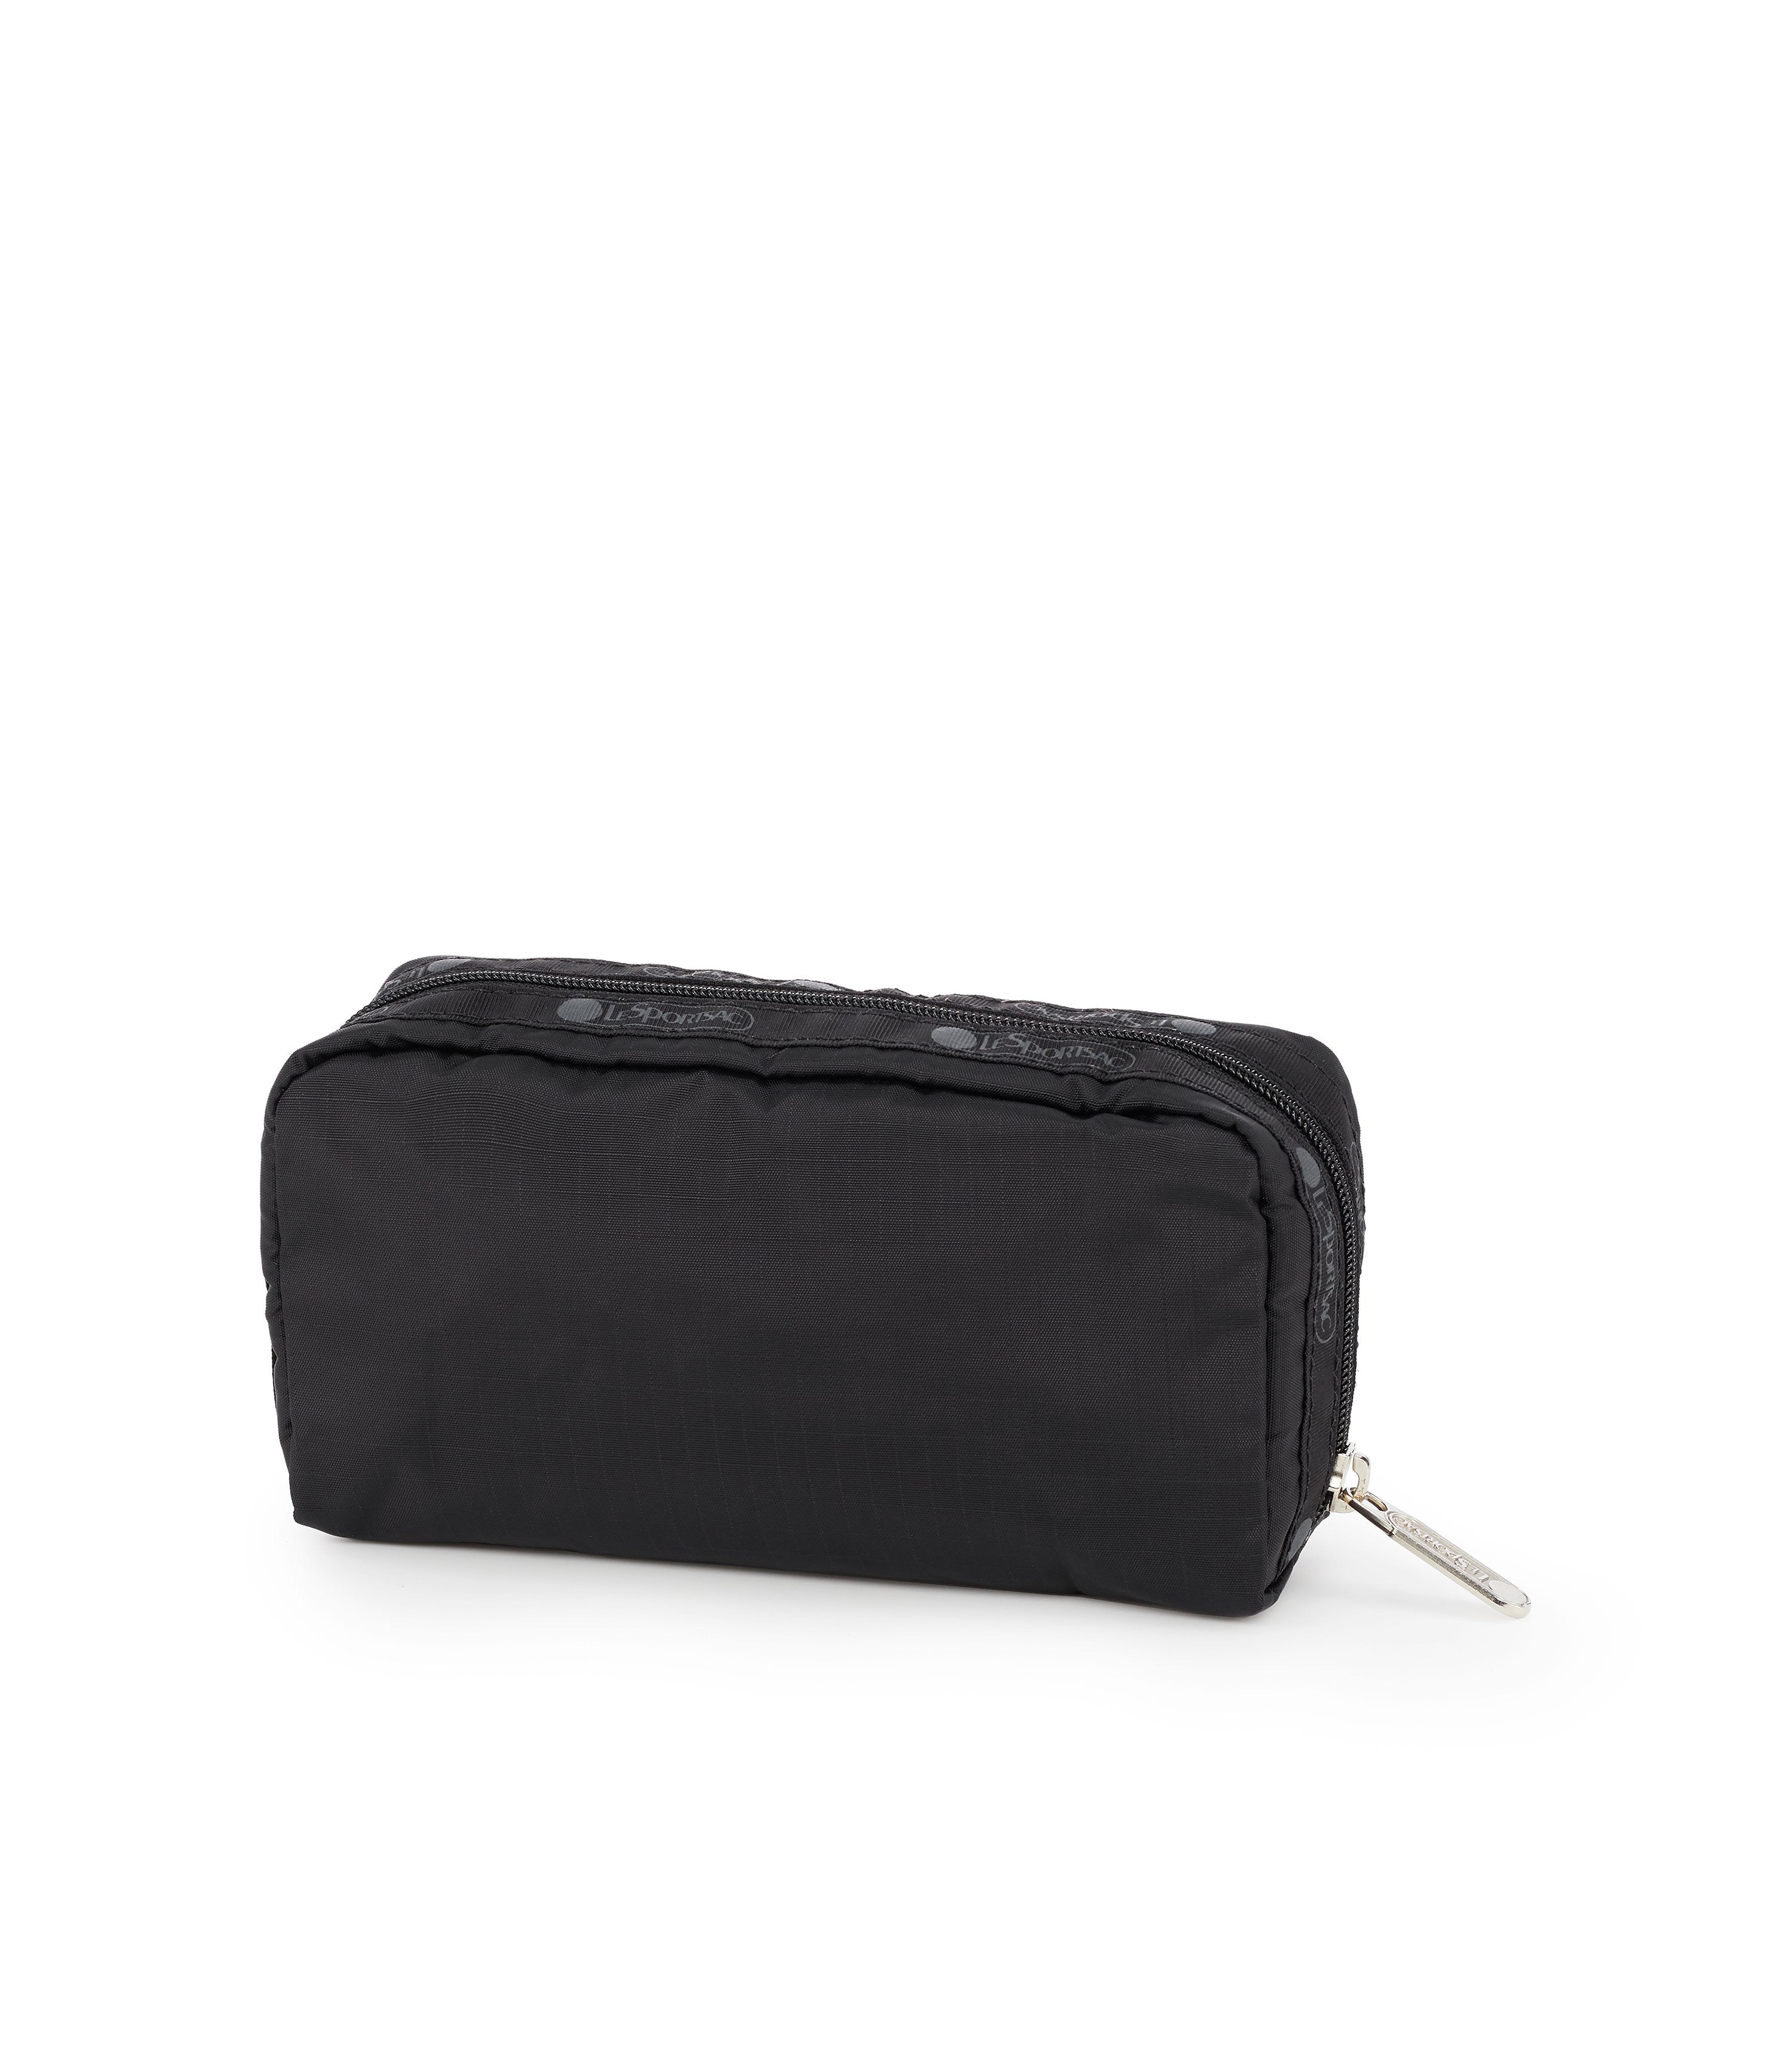 Lesportsac Small Camera Bag - Black C